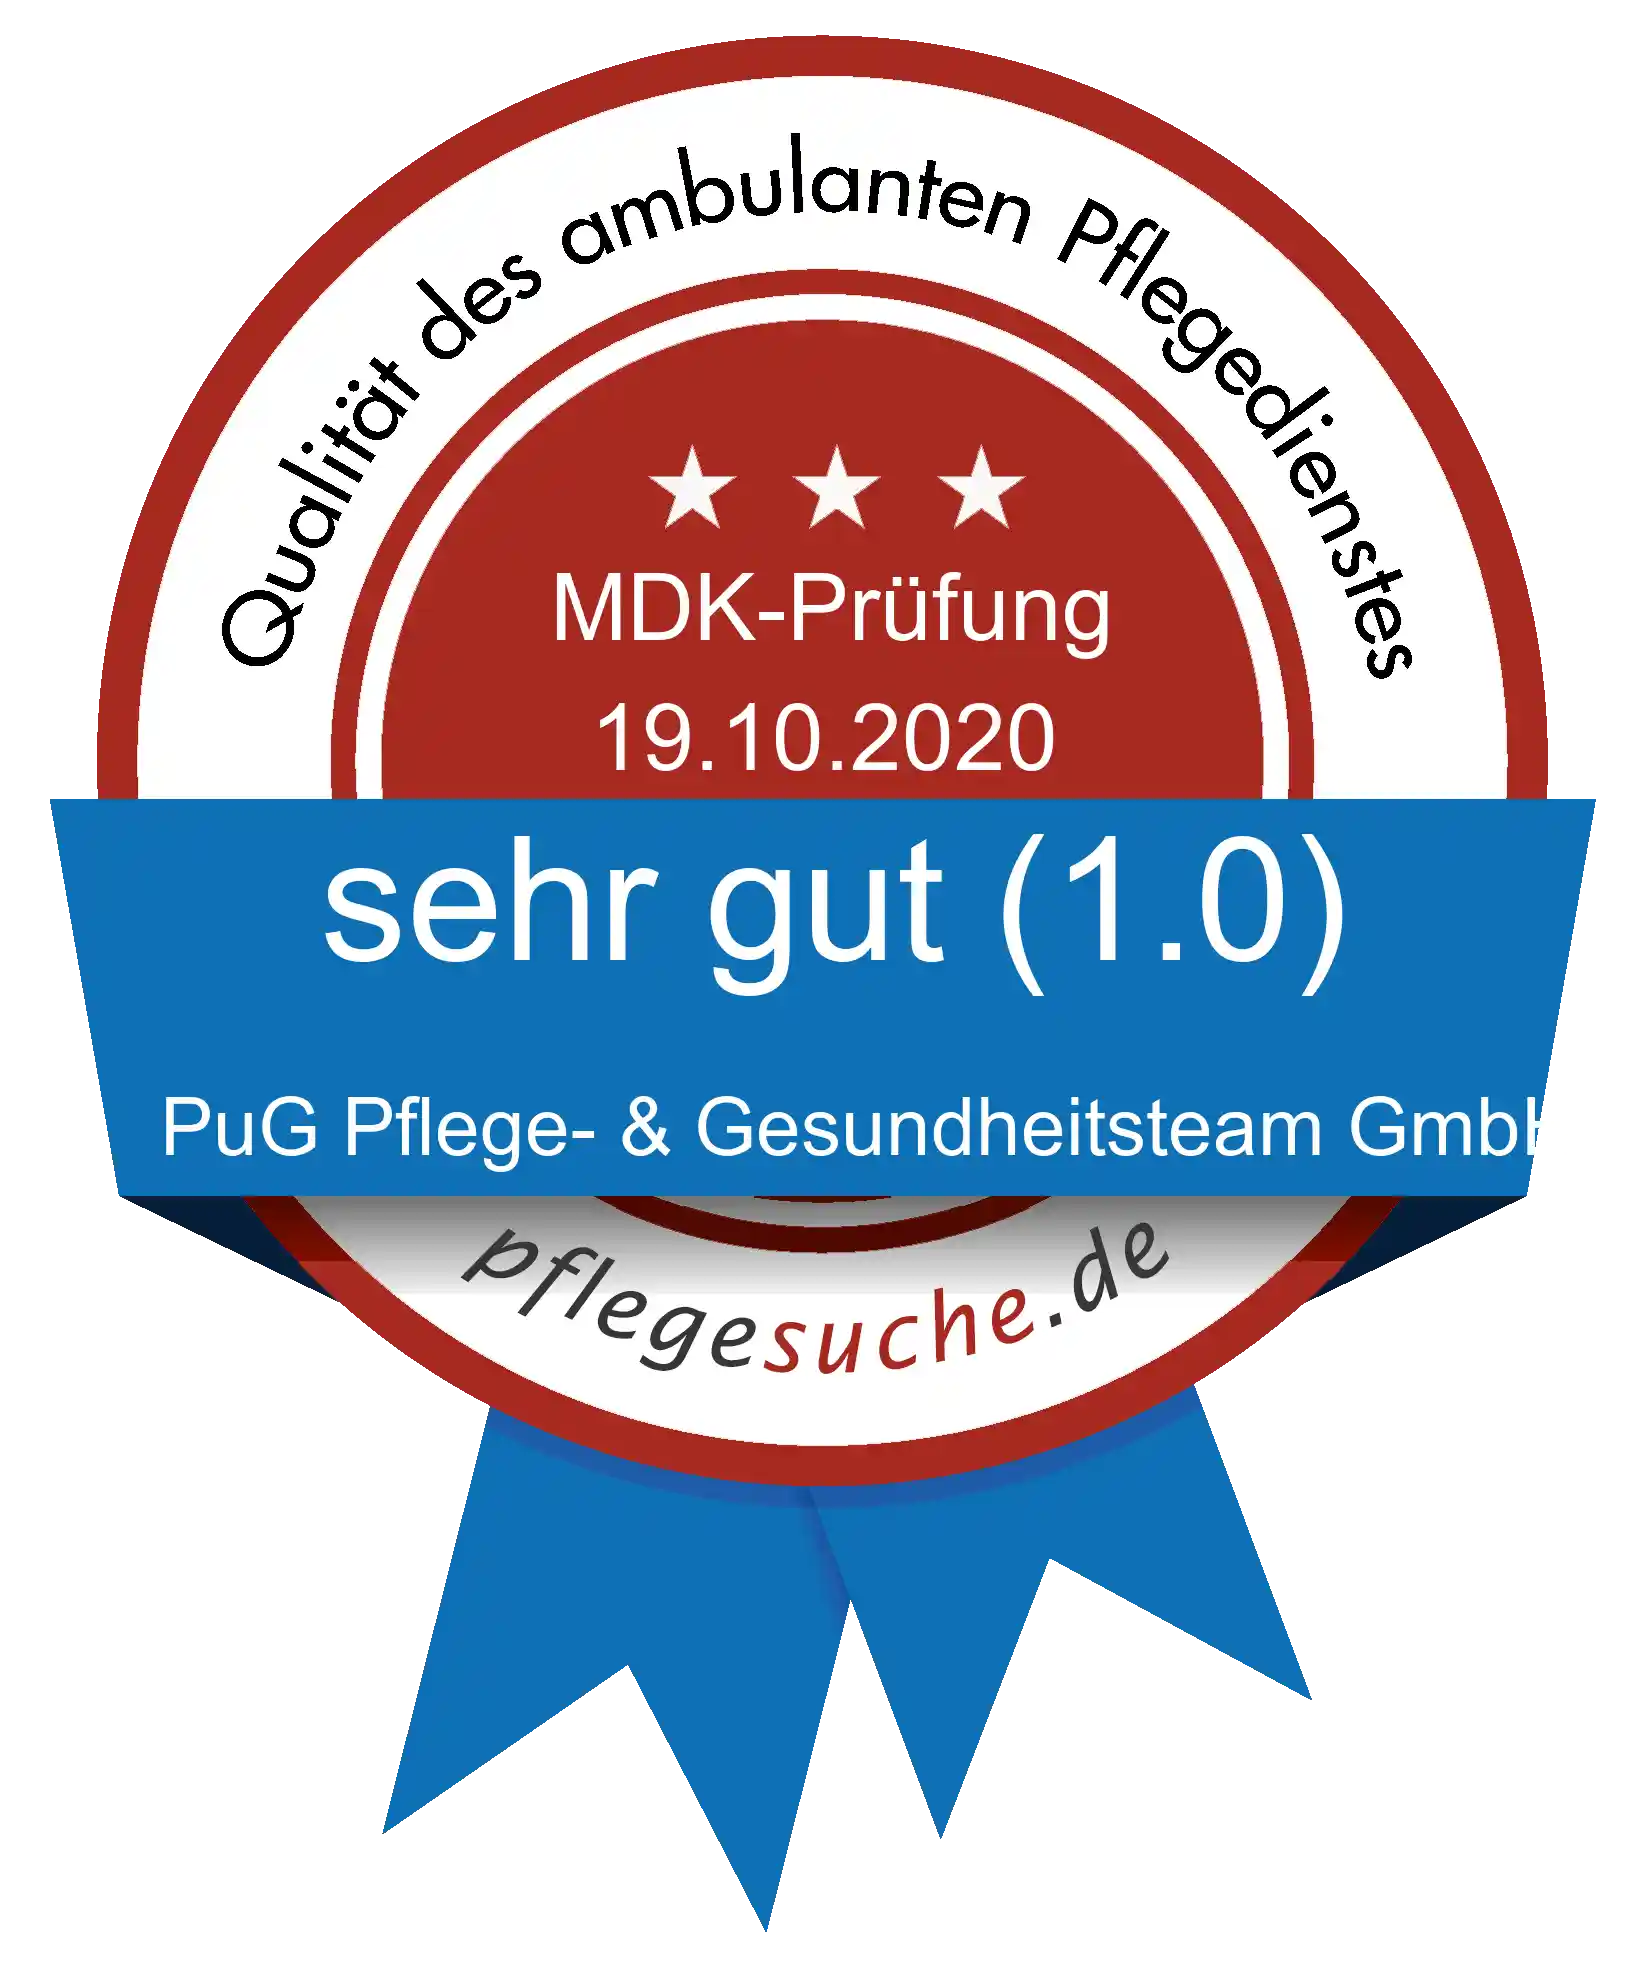 Siegel Benotung: PuG Pflege- & Gesundheitsteam GmbH